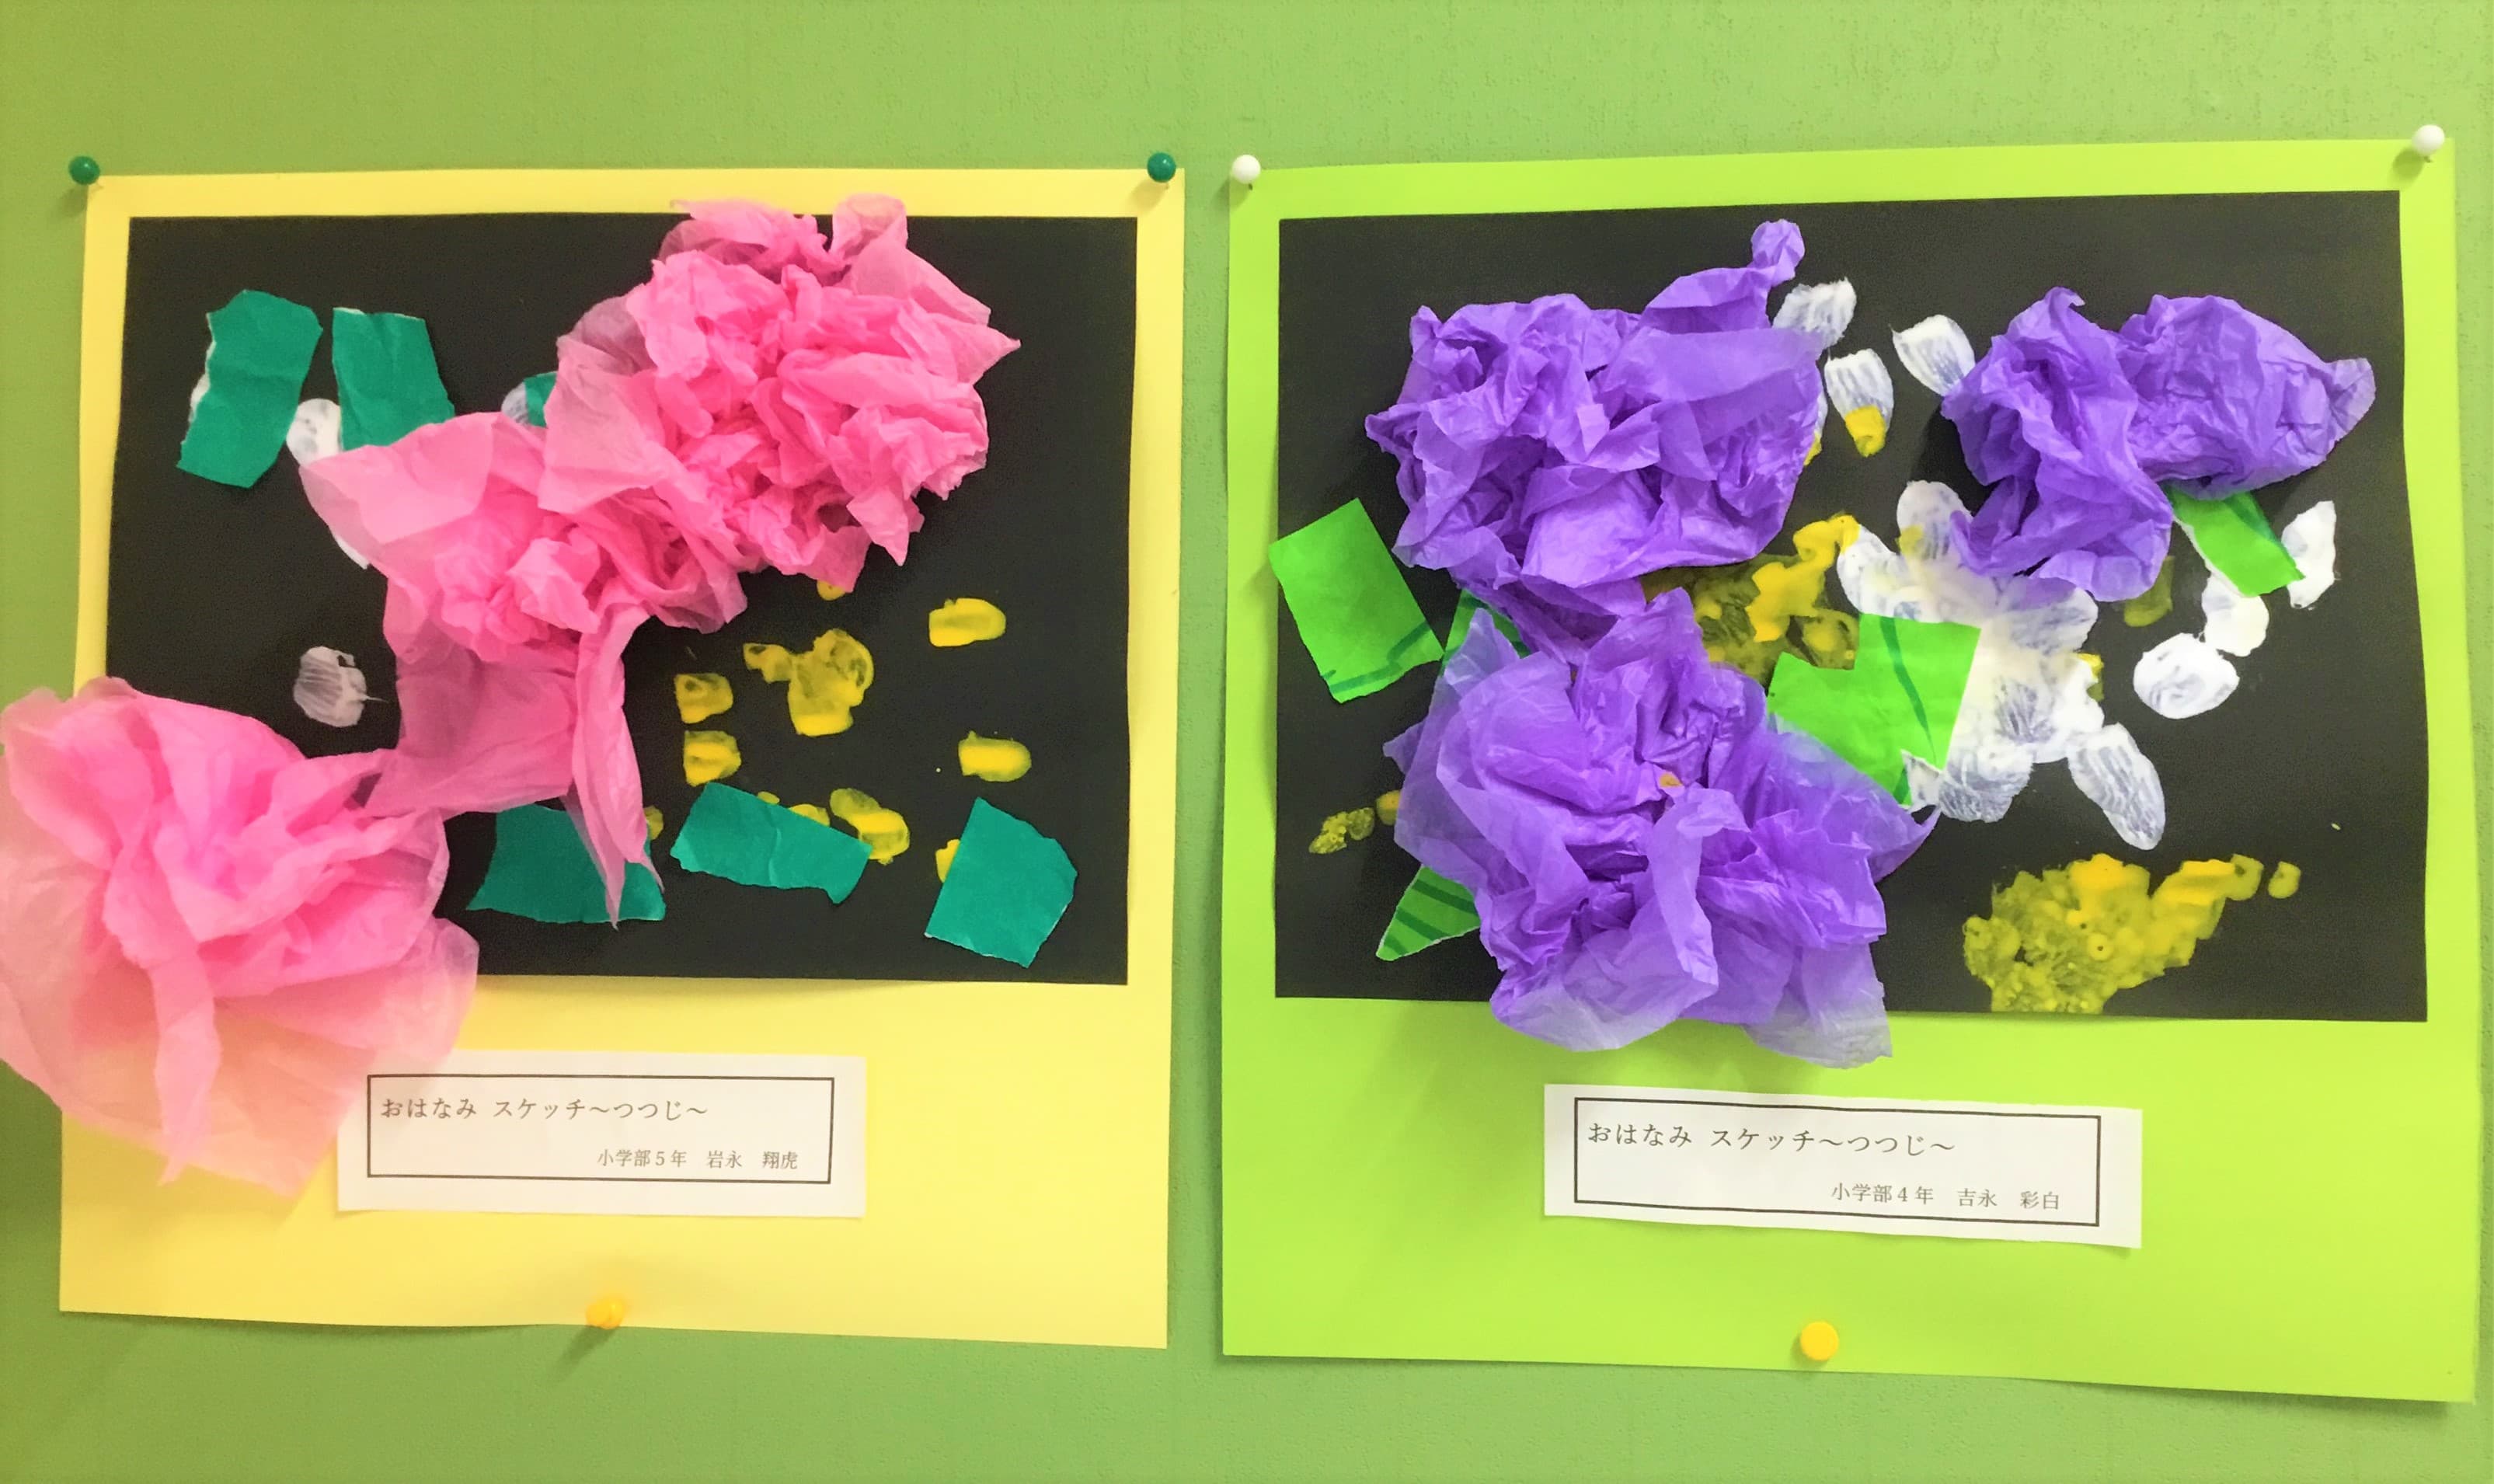 小学部４年生と５年生の児童が、図画工作でつつじの花を触って作った作品。